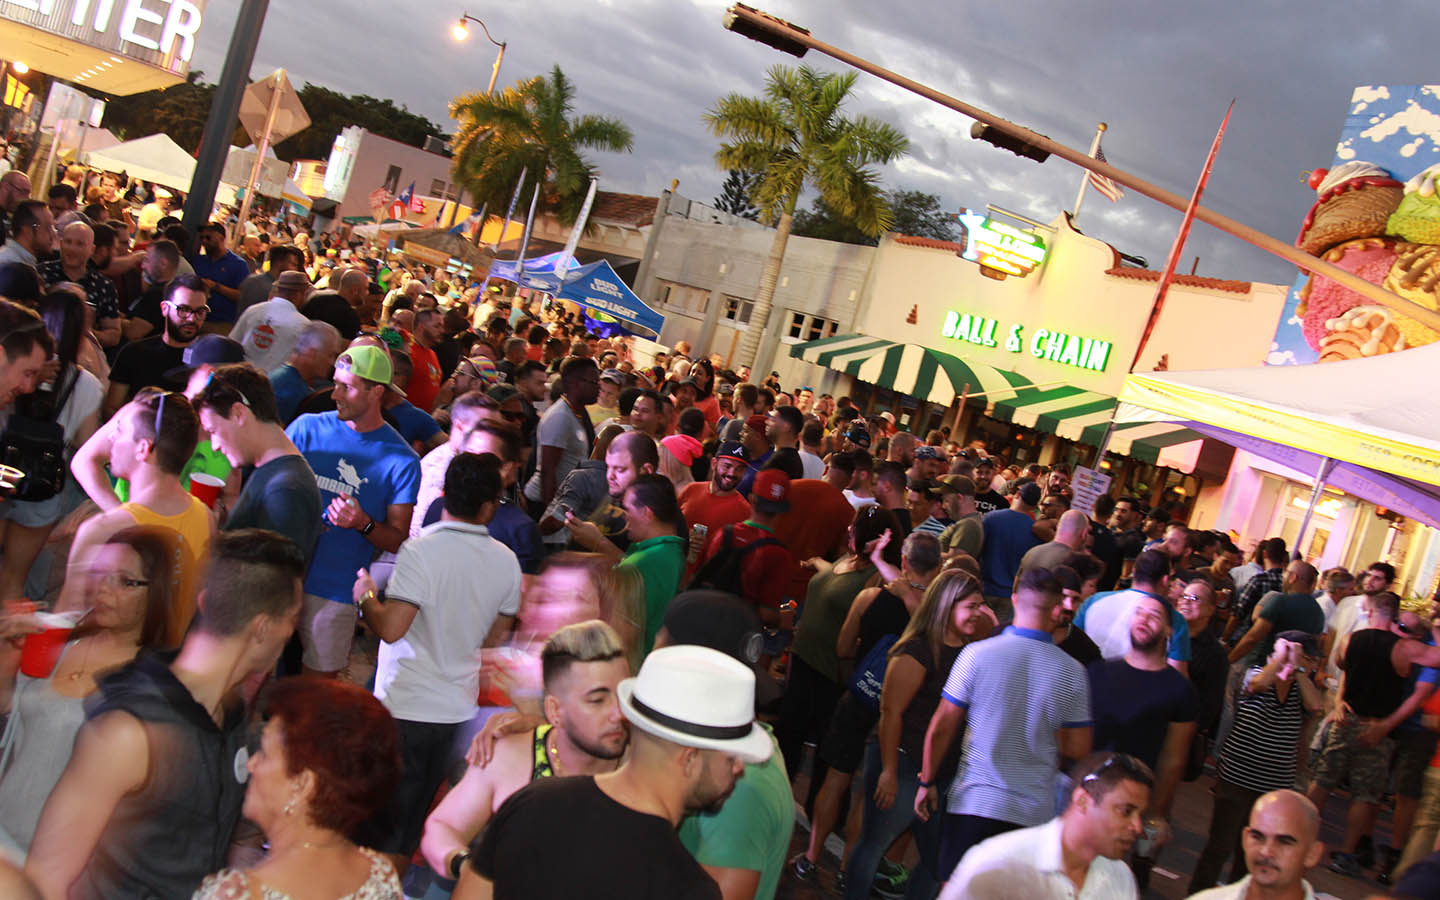 Crowd enjoys Gay8 Festival in Little Havana